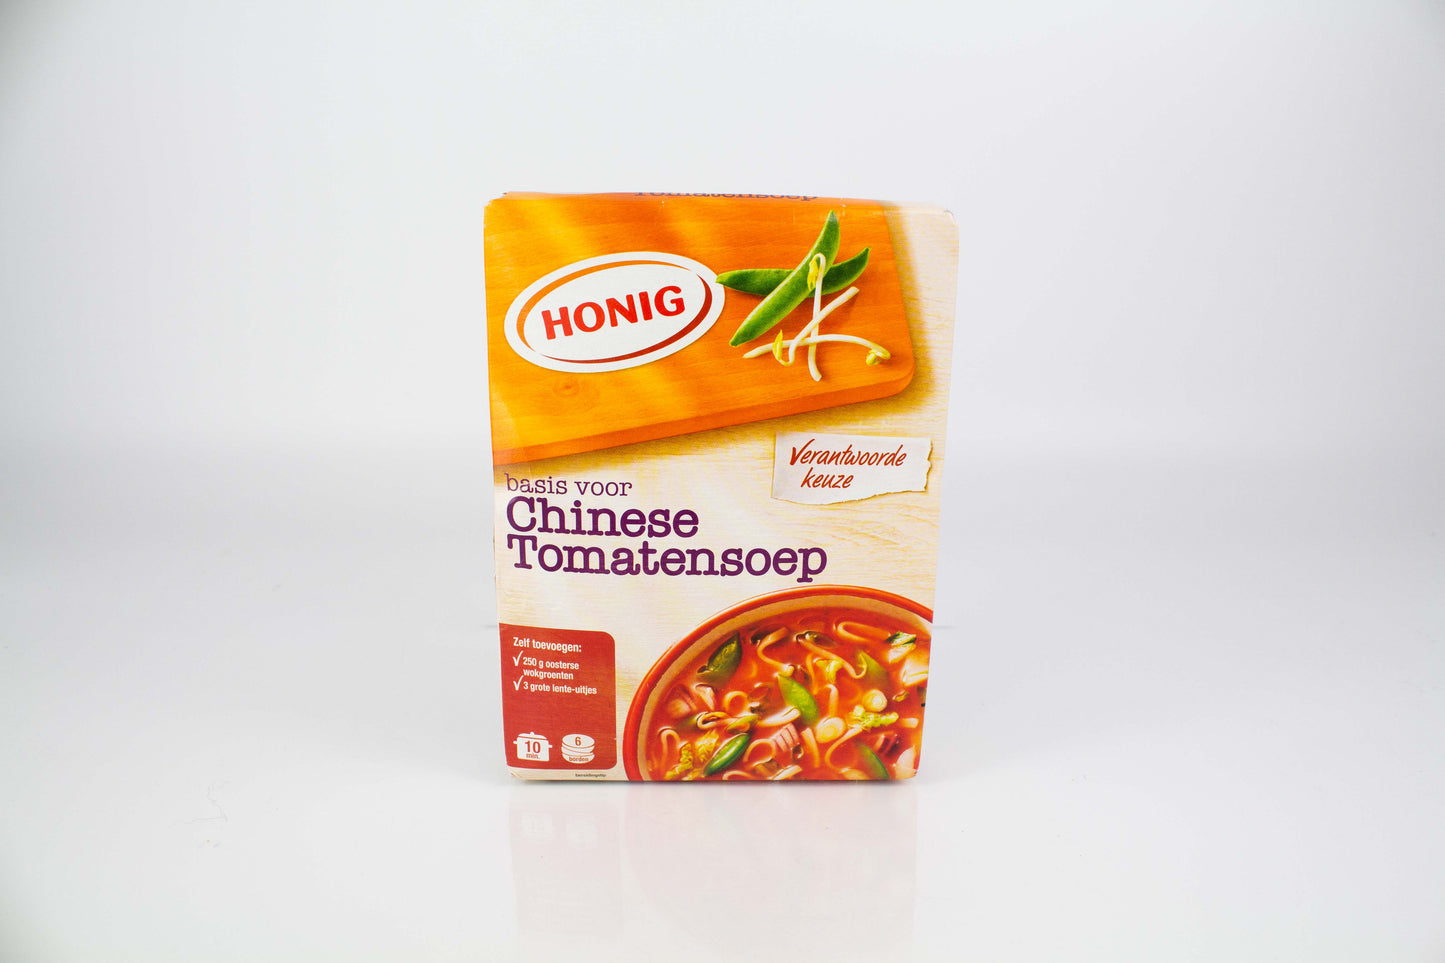 Honig Chinese Tomatensoep